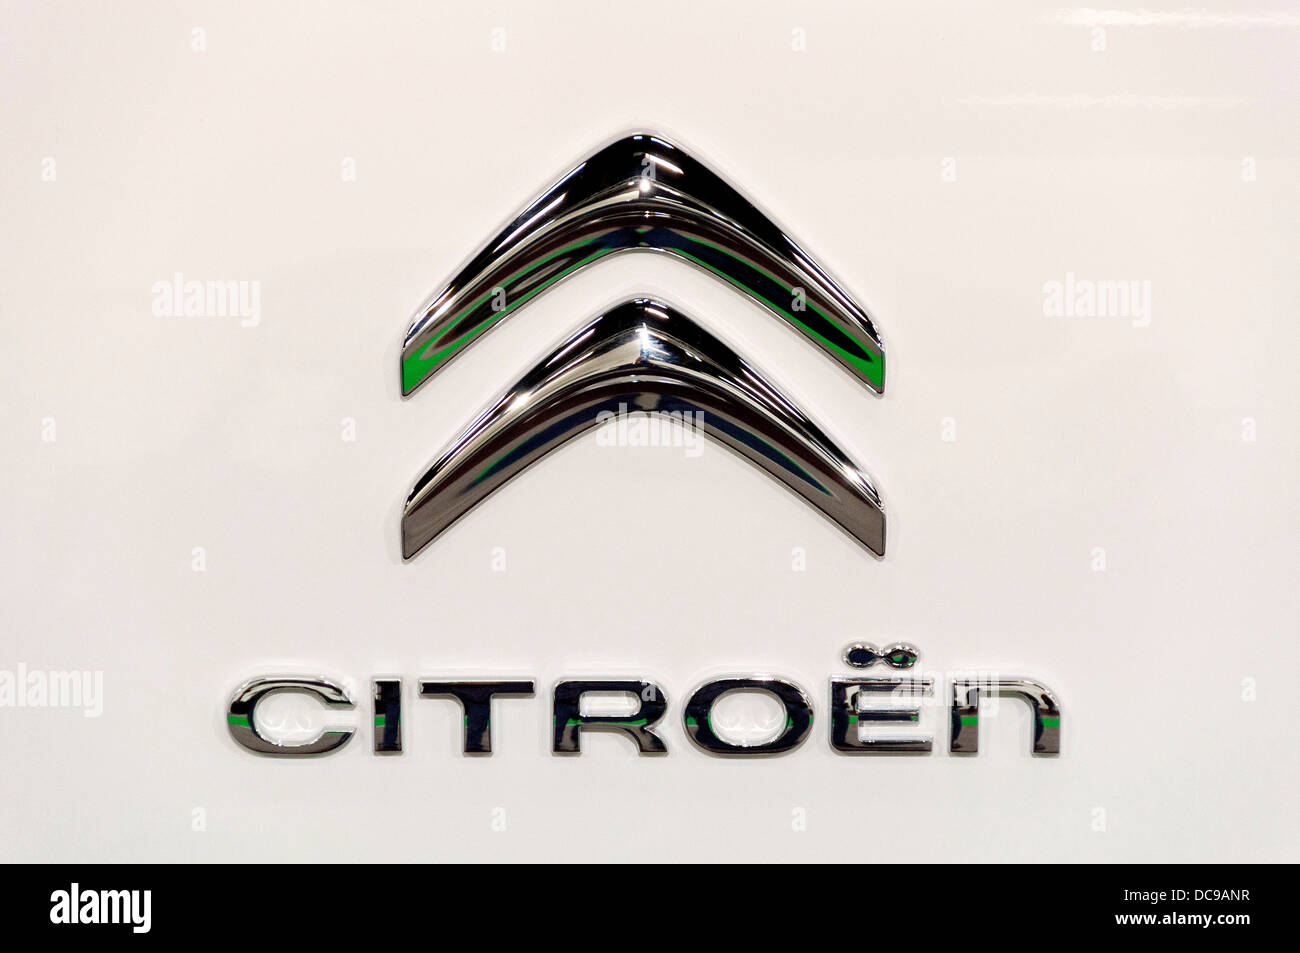 Citroen logo on a car Stock Photo